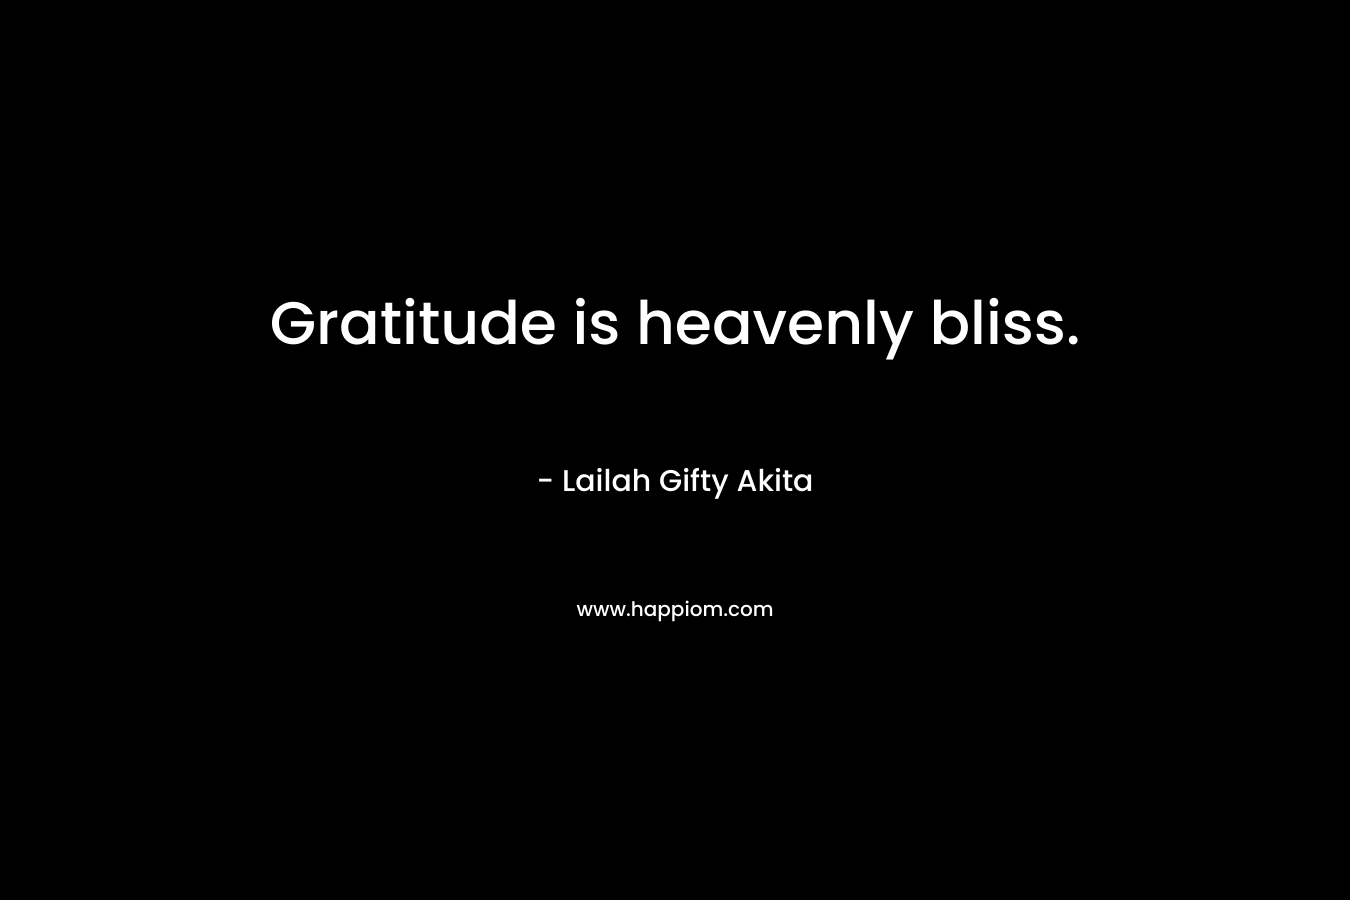 Gratitude is heavenly bliss.